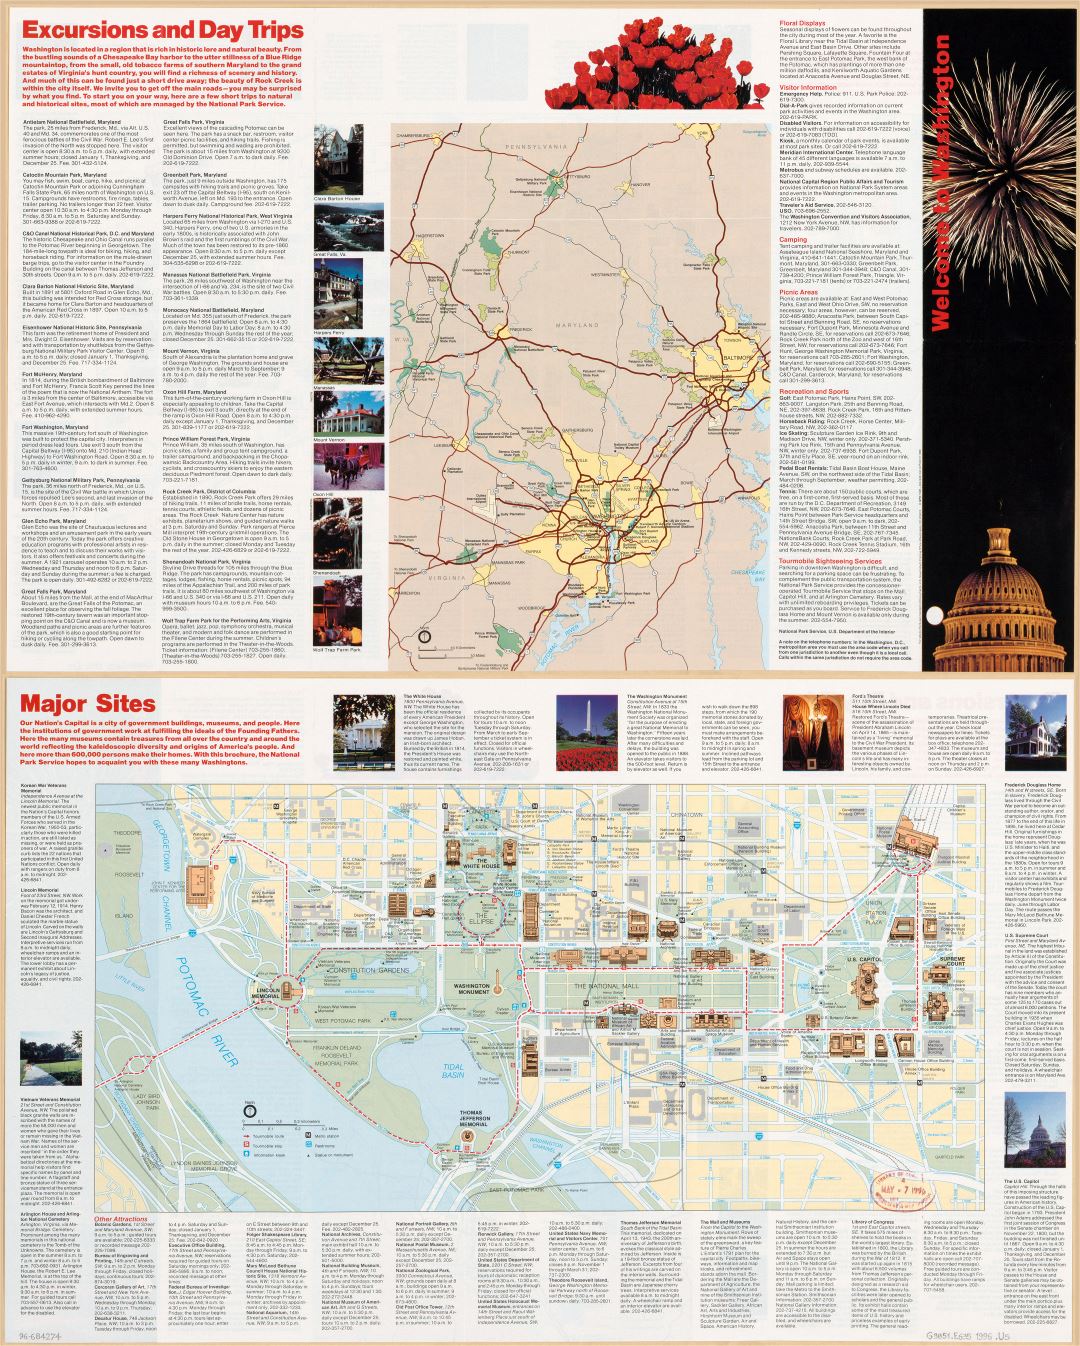 Large scale detailed Washington D.C. tourist map - 1996